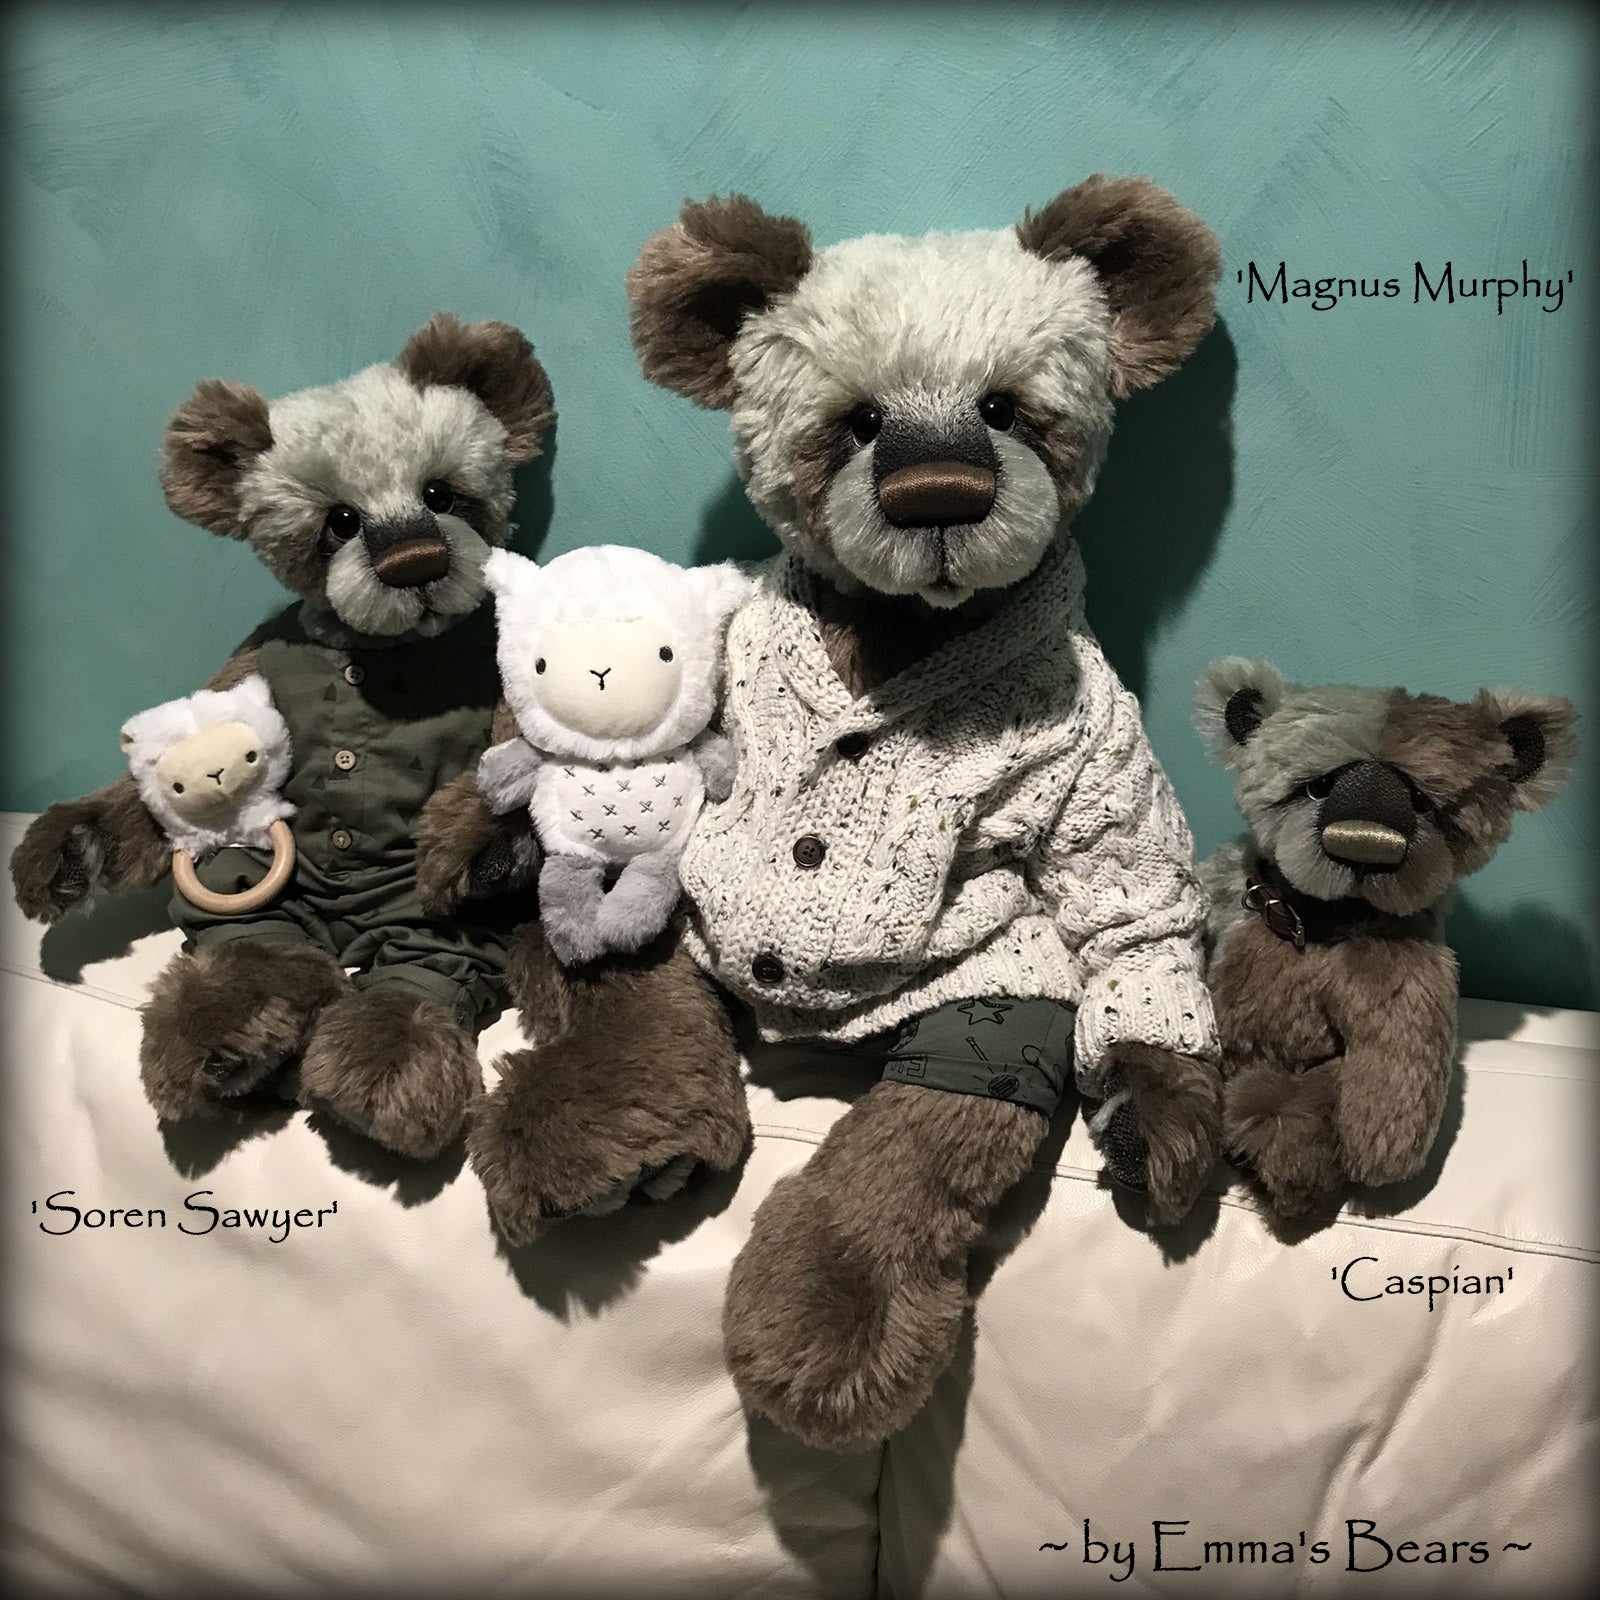 Magnus Murphy - 26" Mohair Artist Bear by Emma's Bears - OOAK